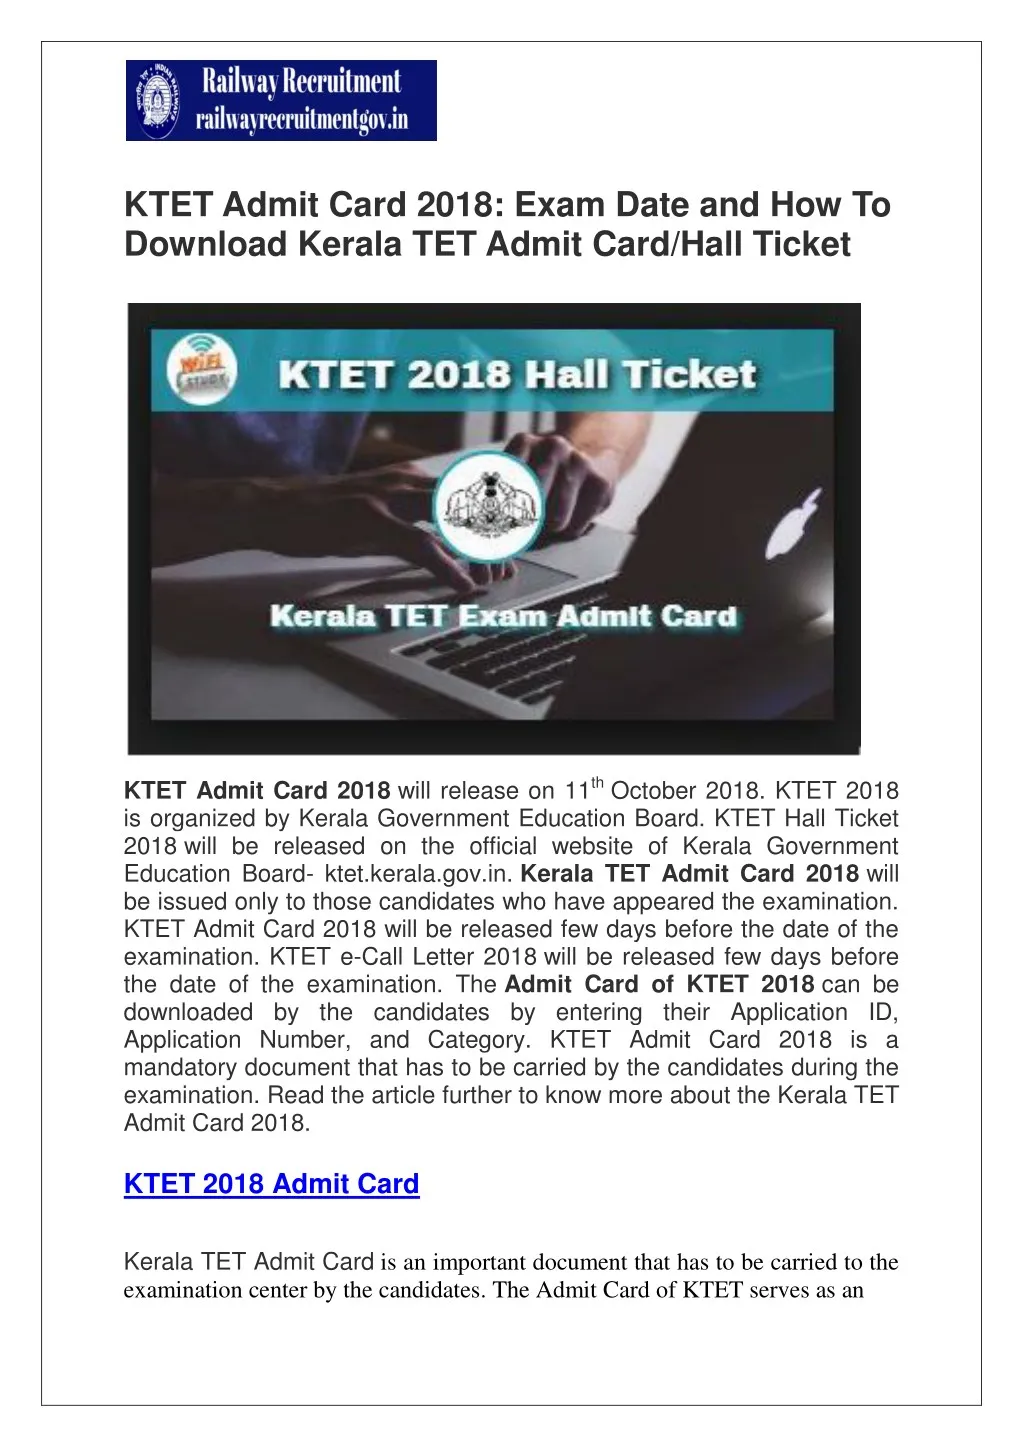 ktet admit card 2018 exam date